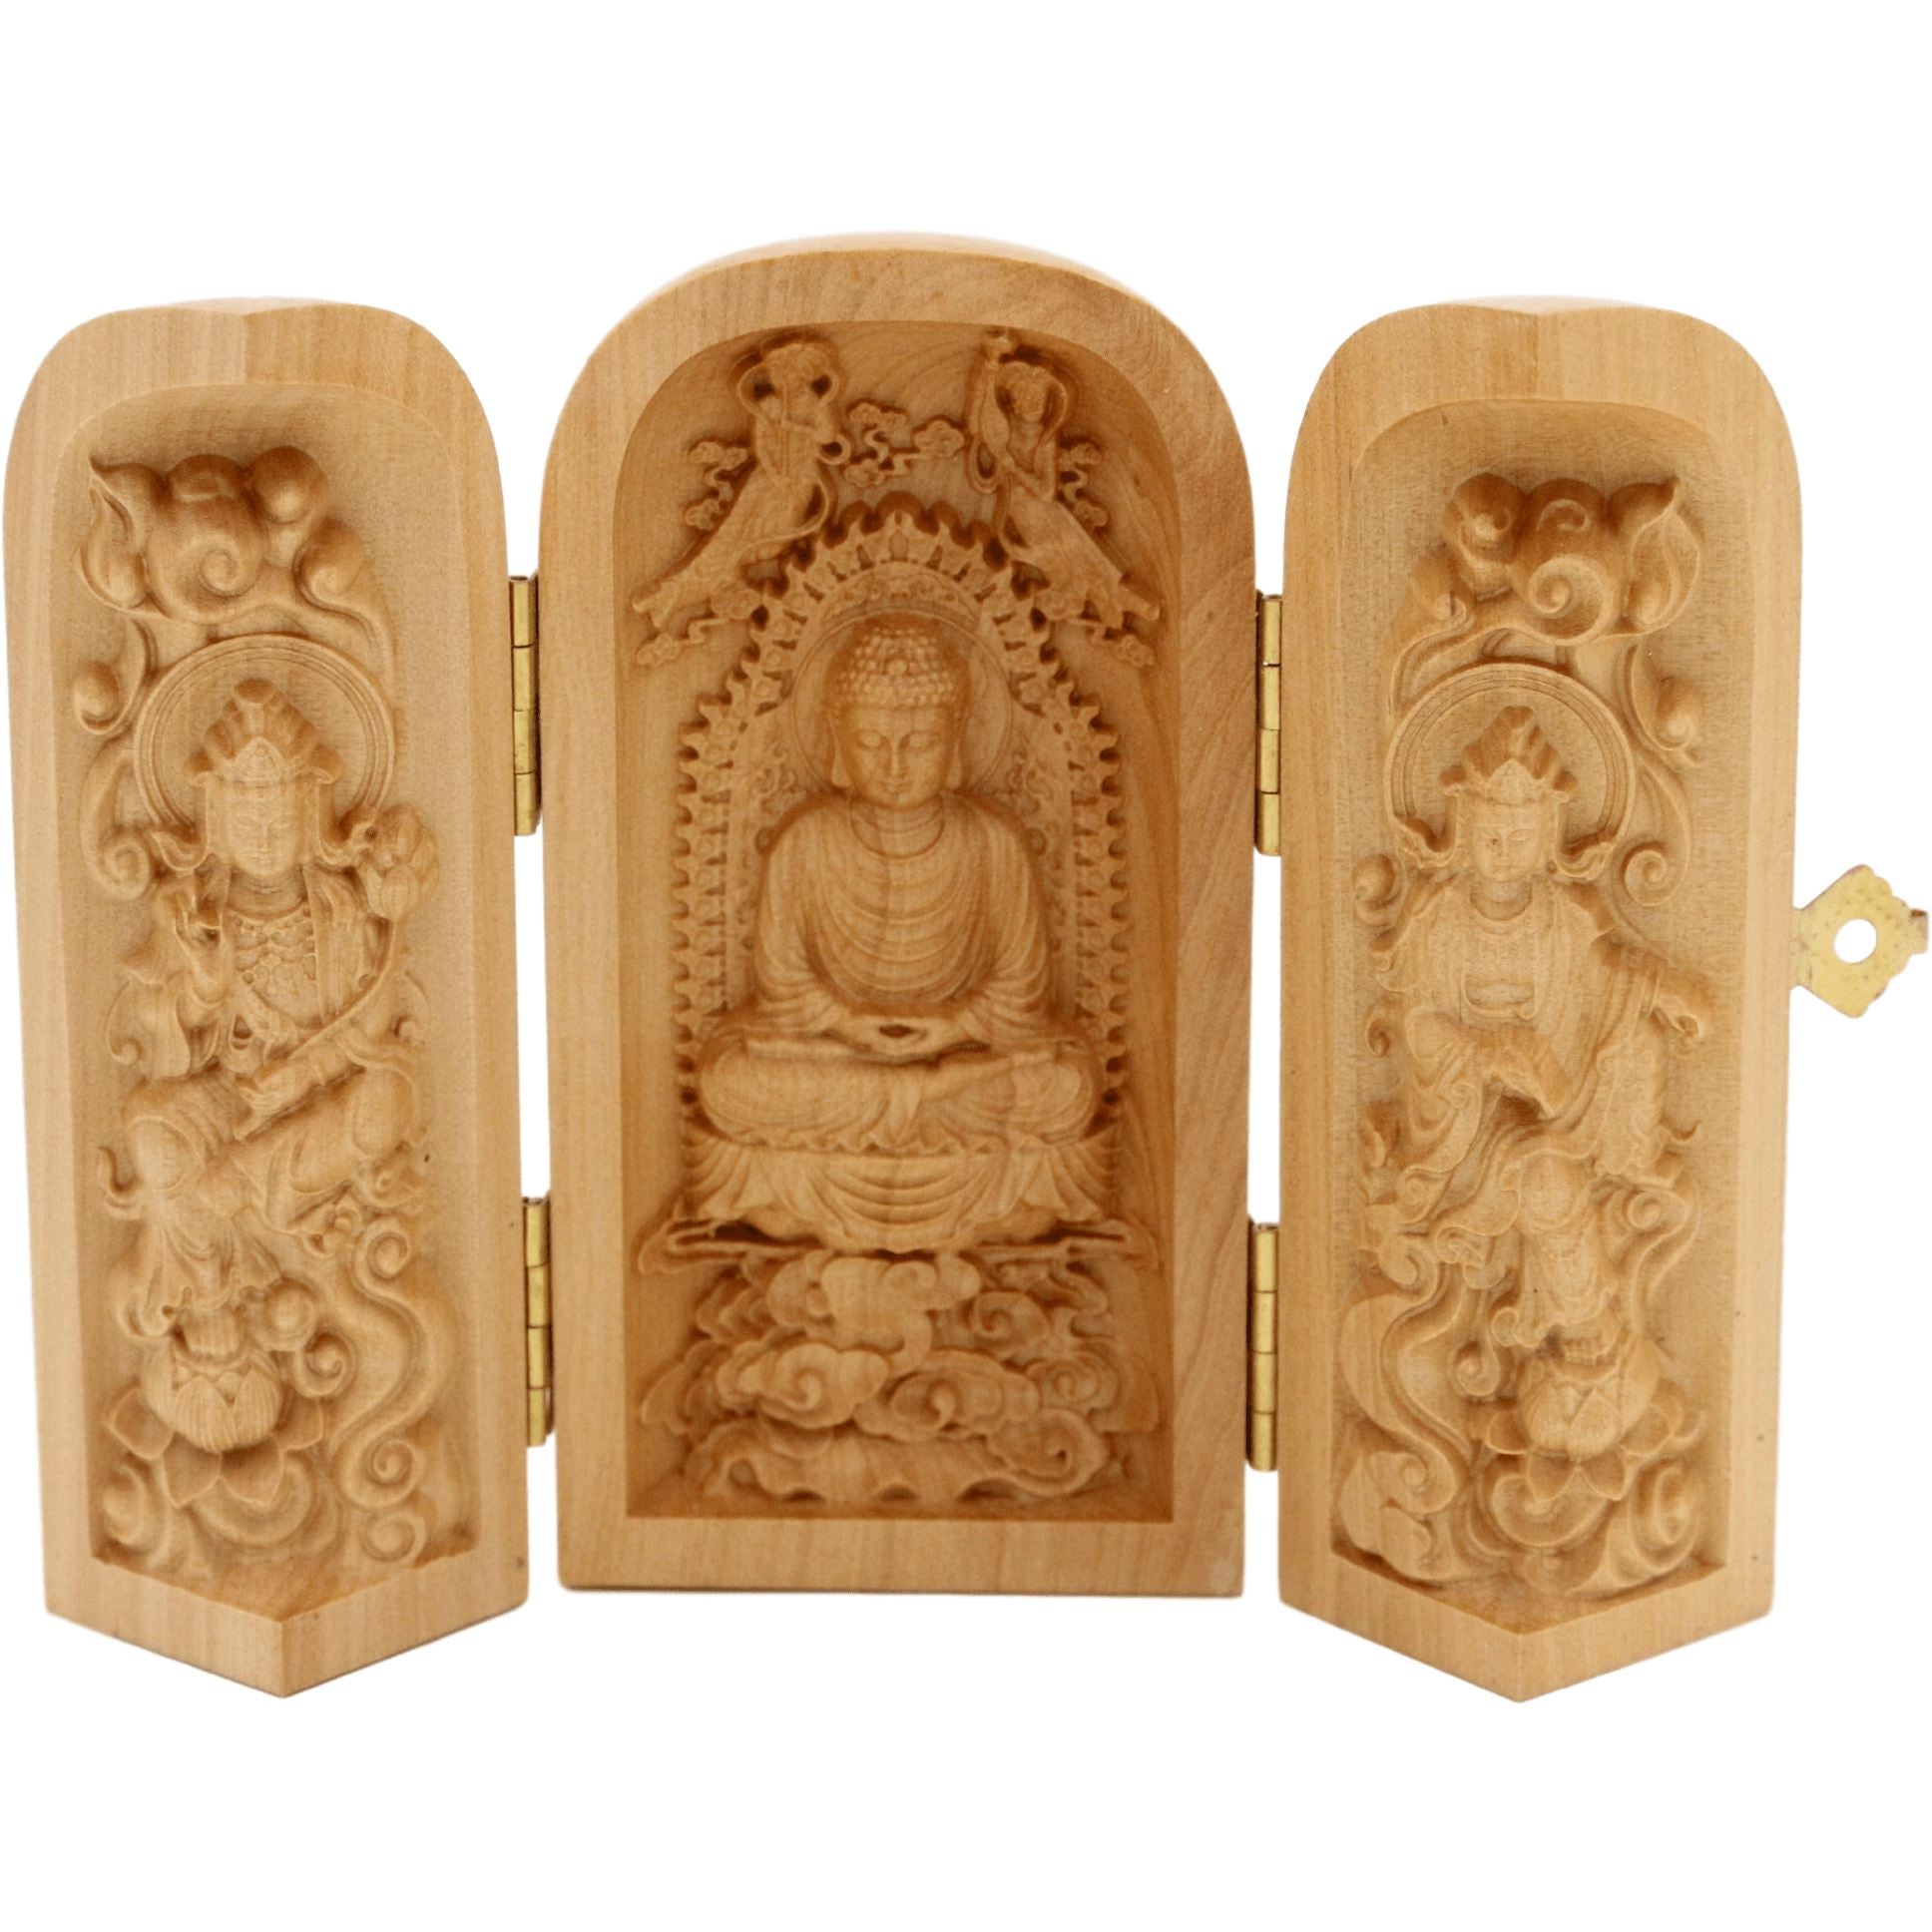 Caja de 3 estatuillas de madera artesanales - Buda Amitabha - Diseño 3